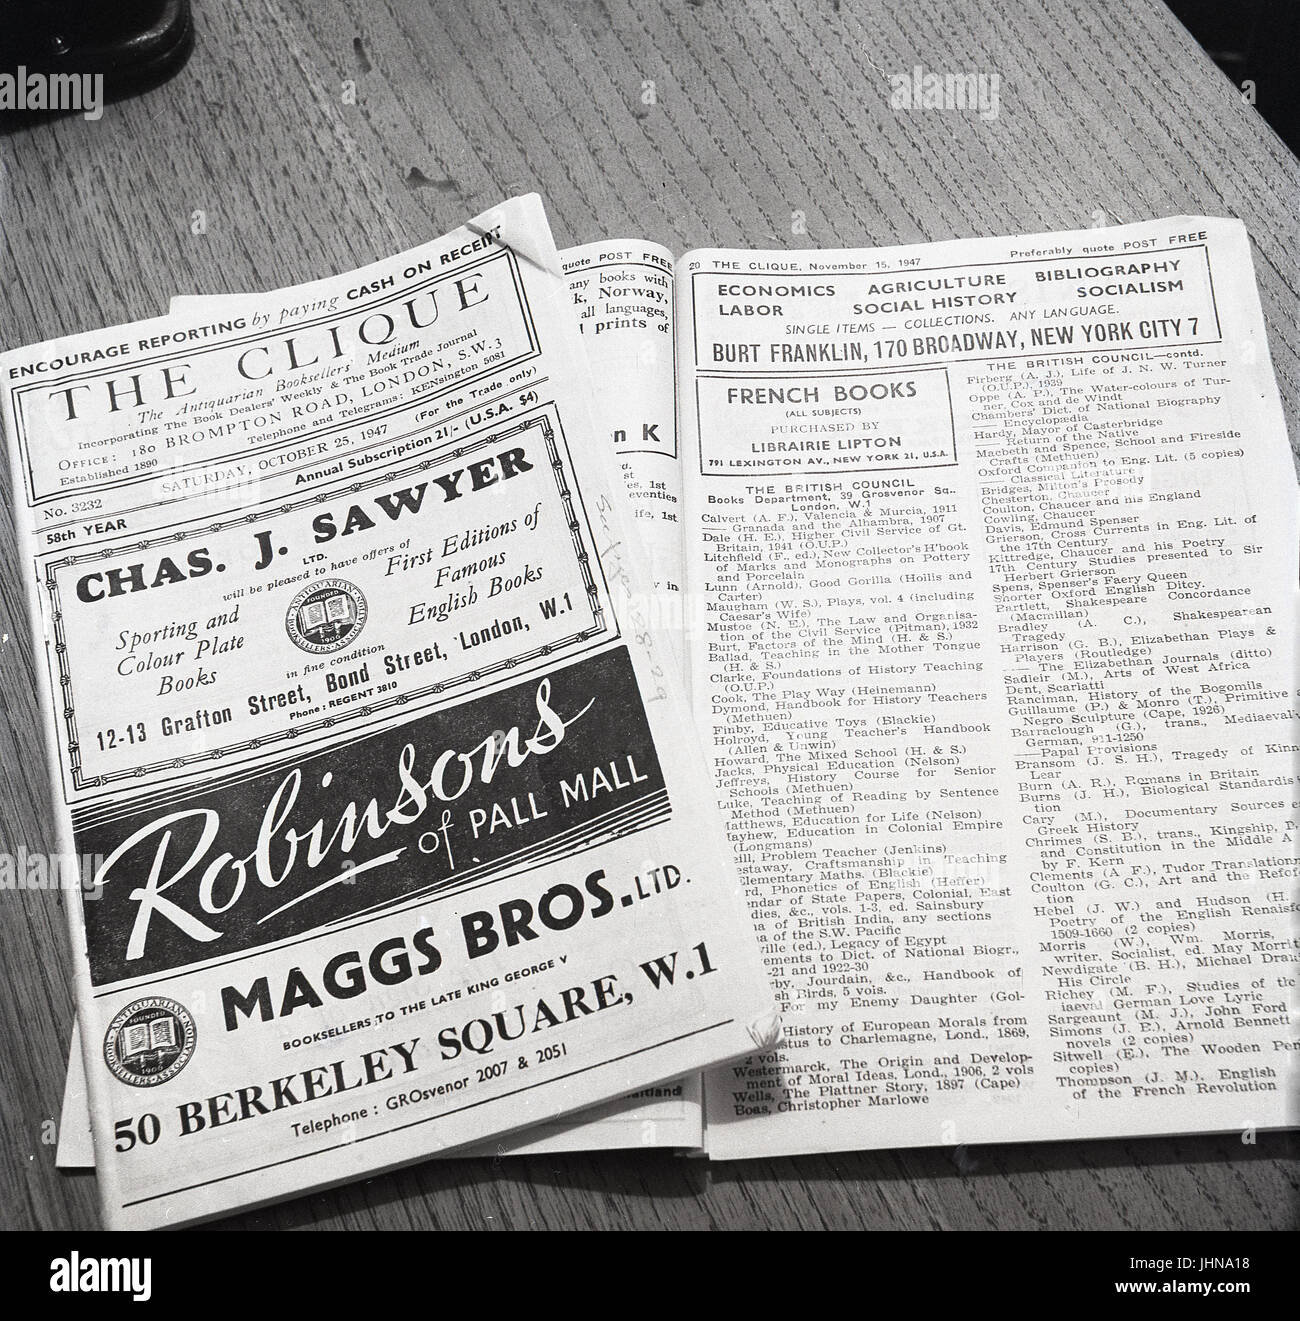 1947, Inghilterra, immagine mostra copie di 'la cricca', uno specialista di antiquario bookdealers trade directory o ufficiale disponibile al momento che i libri elencati voluto. Foto Stock